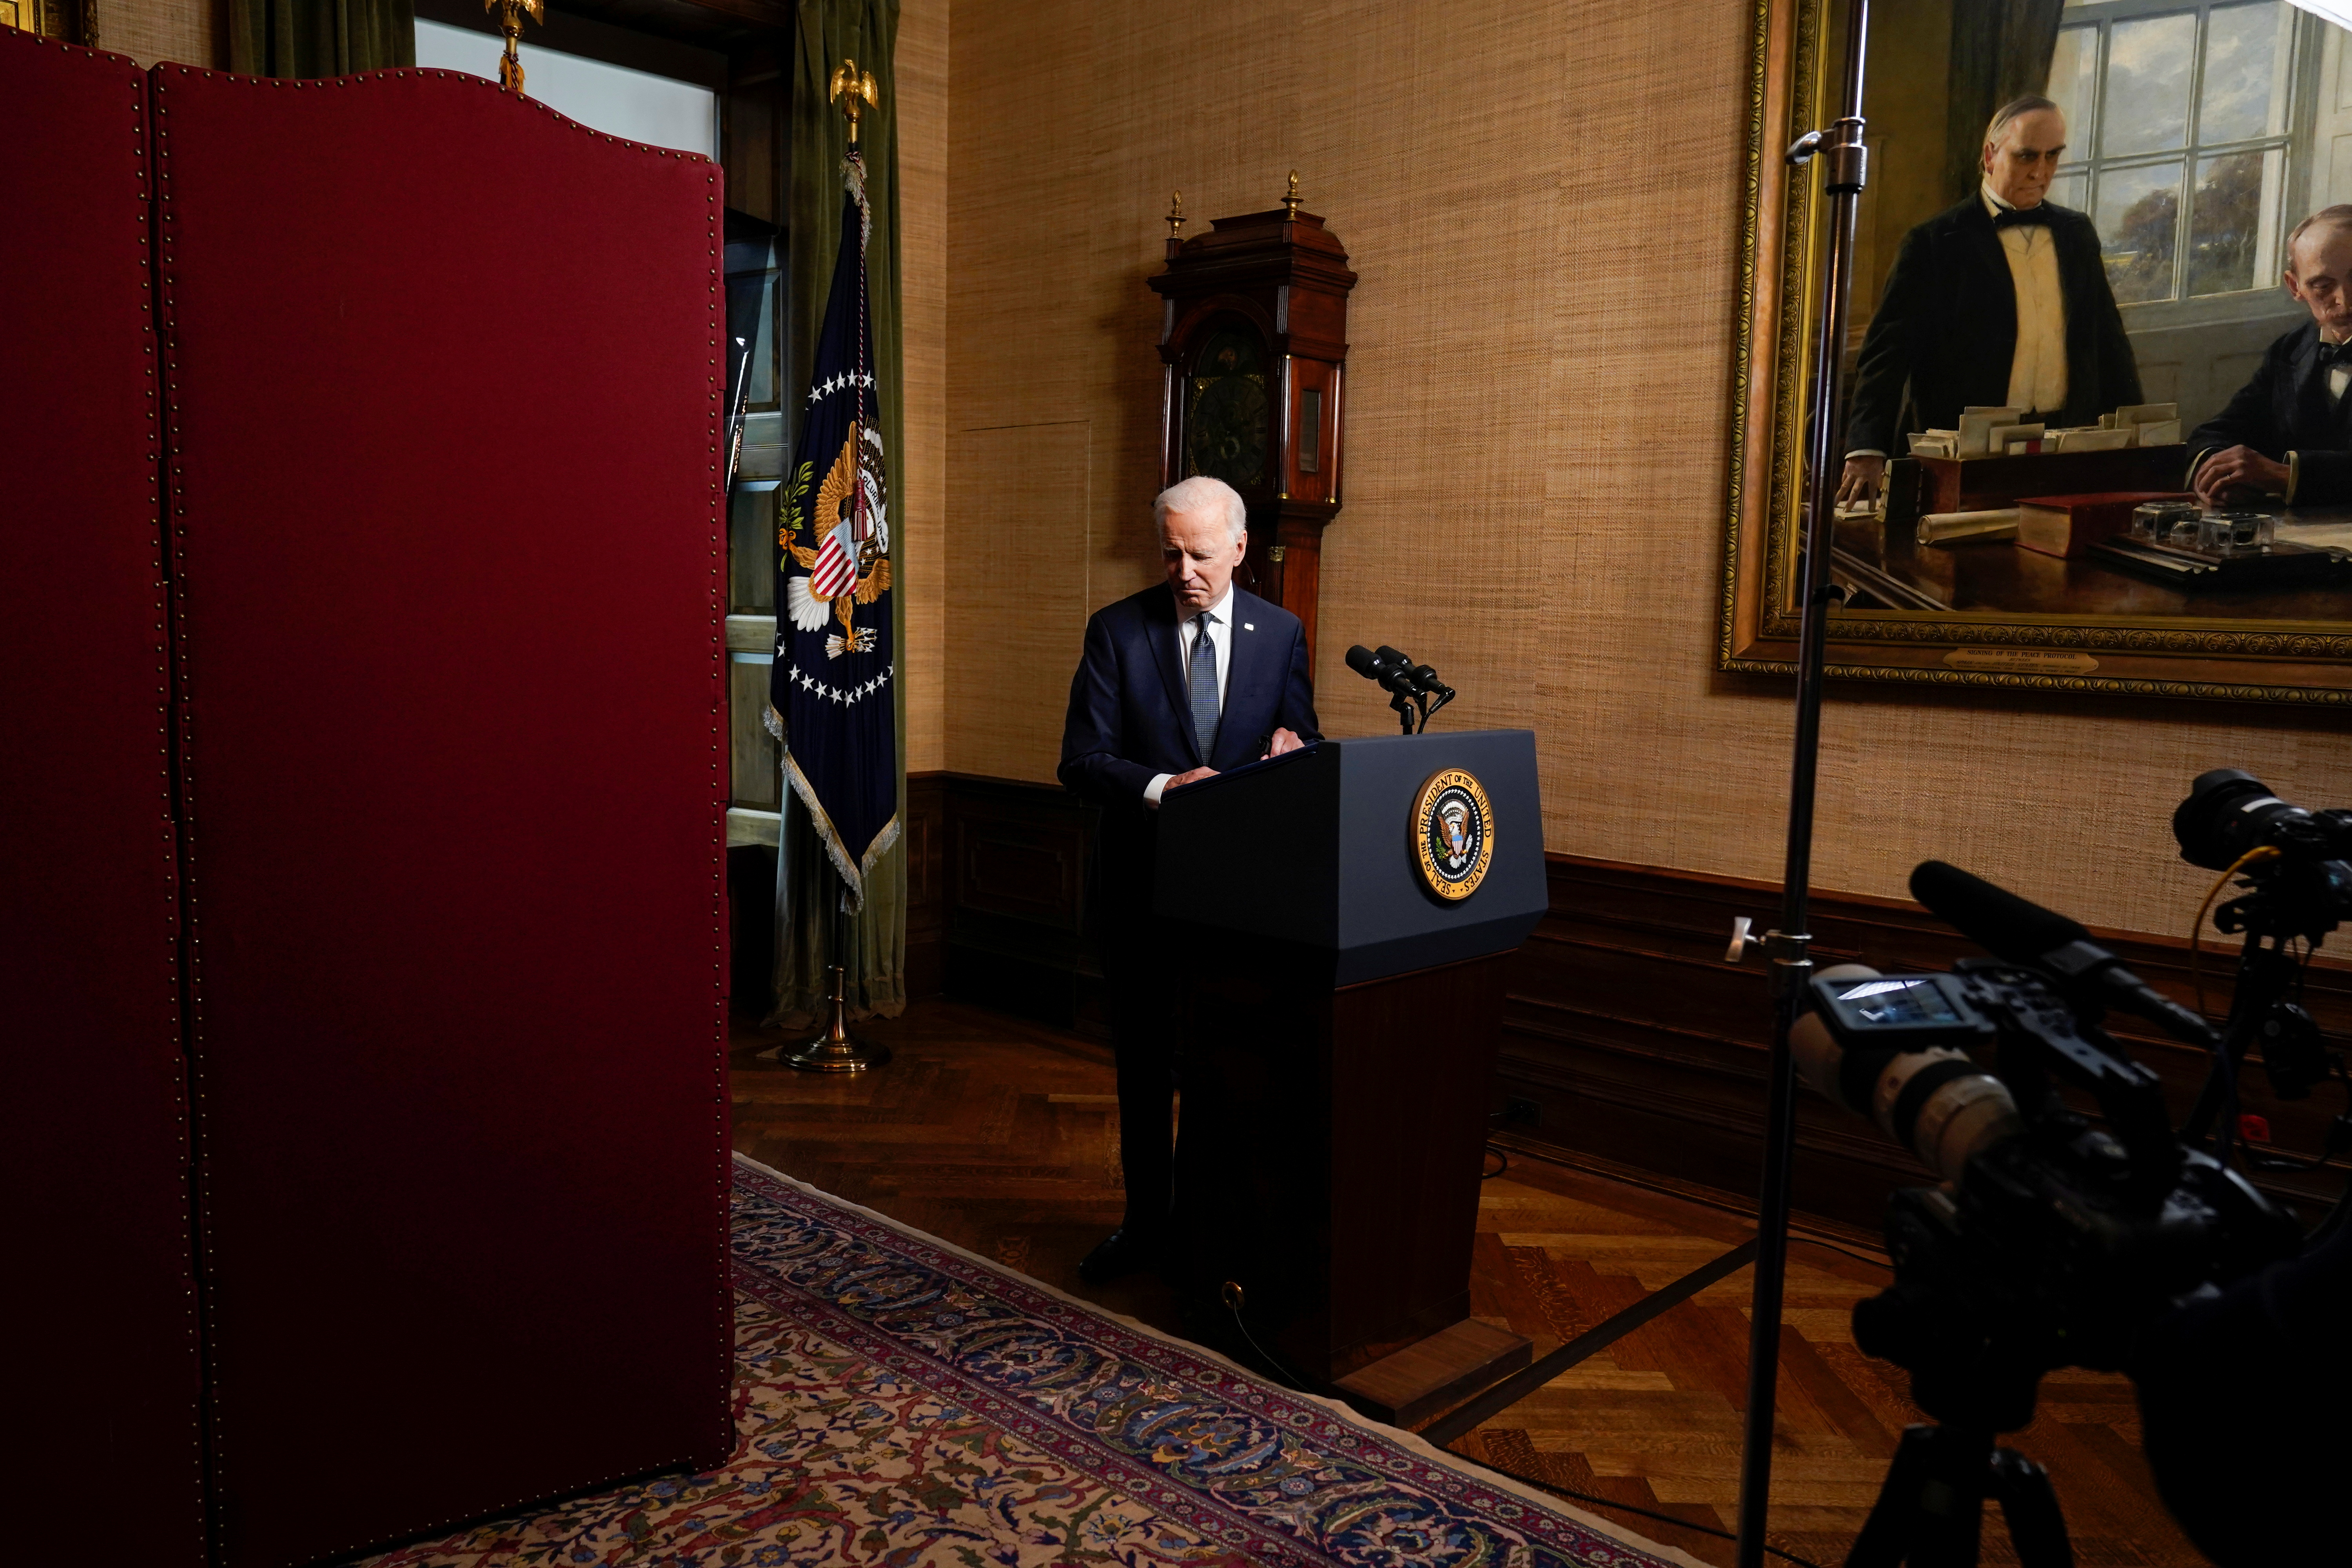 Biden luego de dar el discurso. Foto: Andrew Harnik/Pool via REUTERS